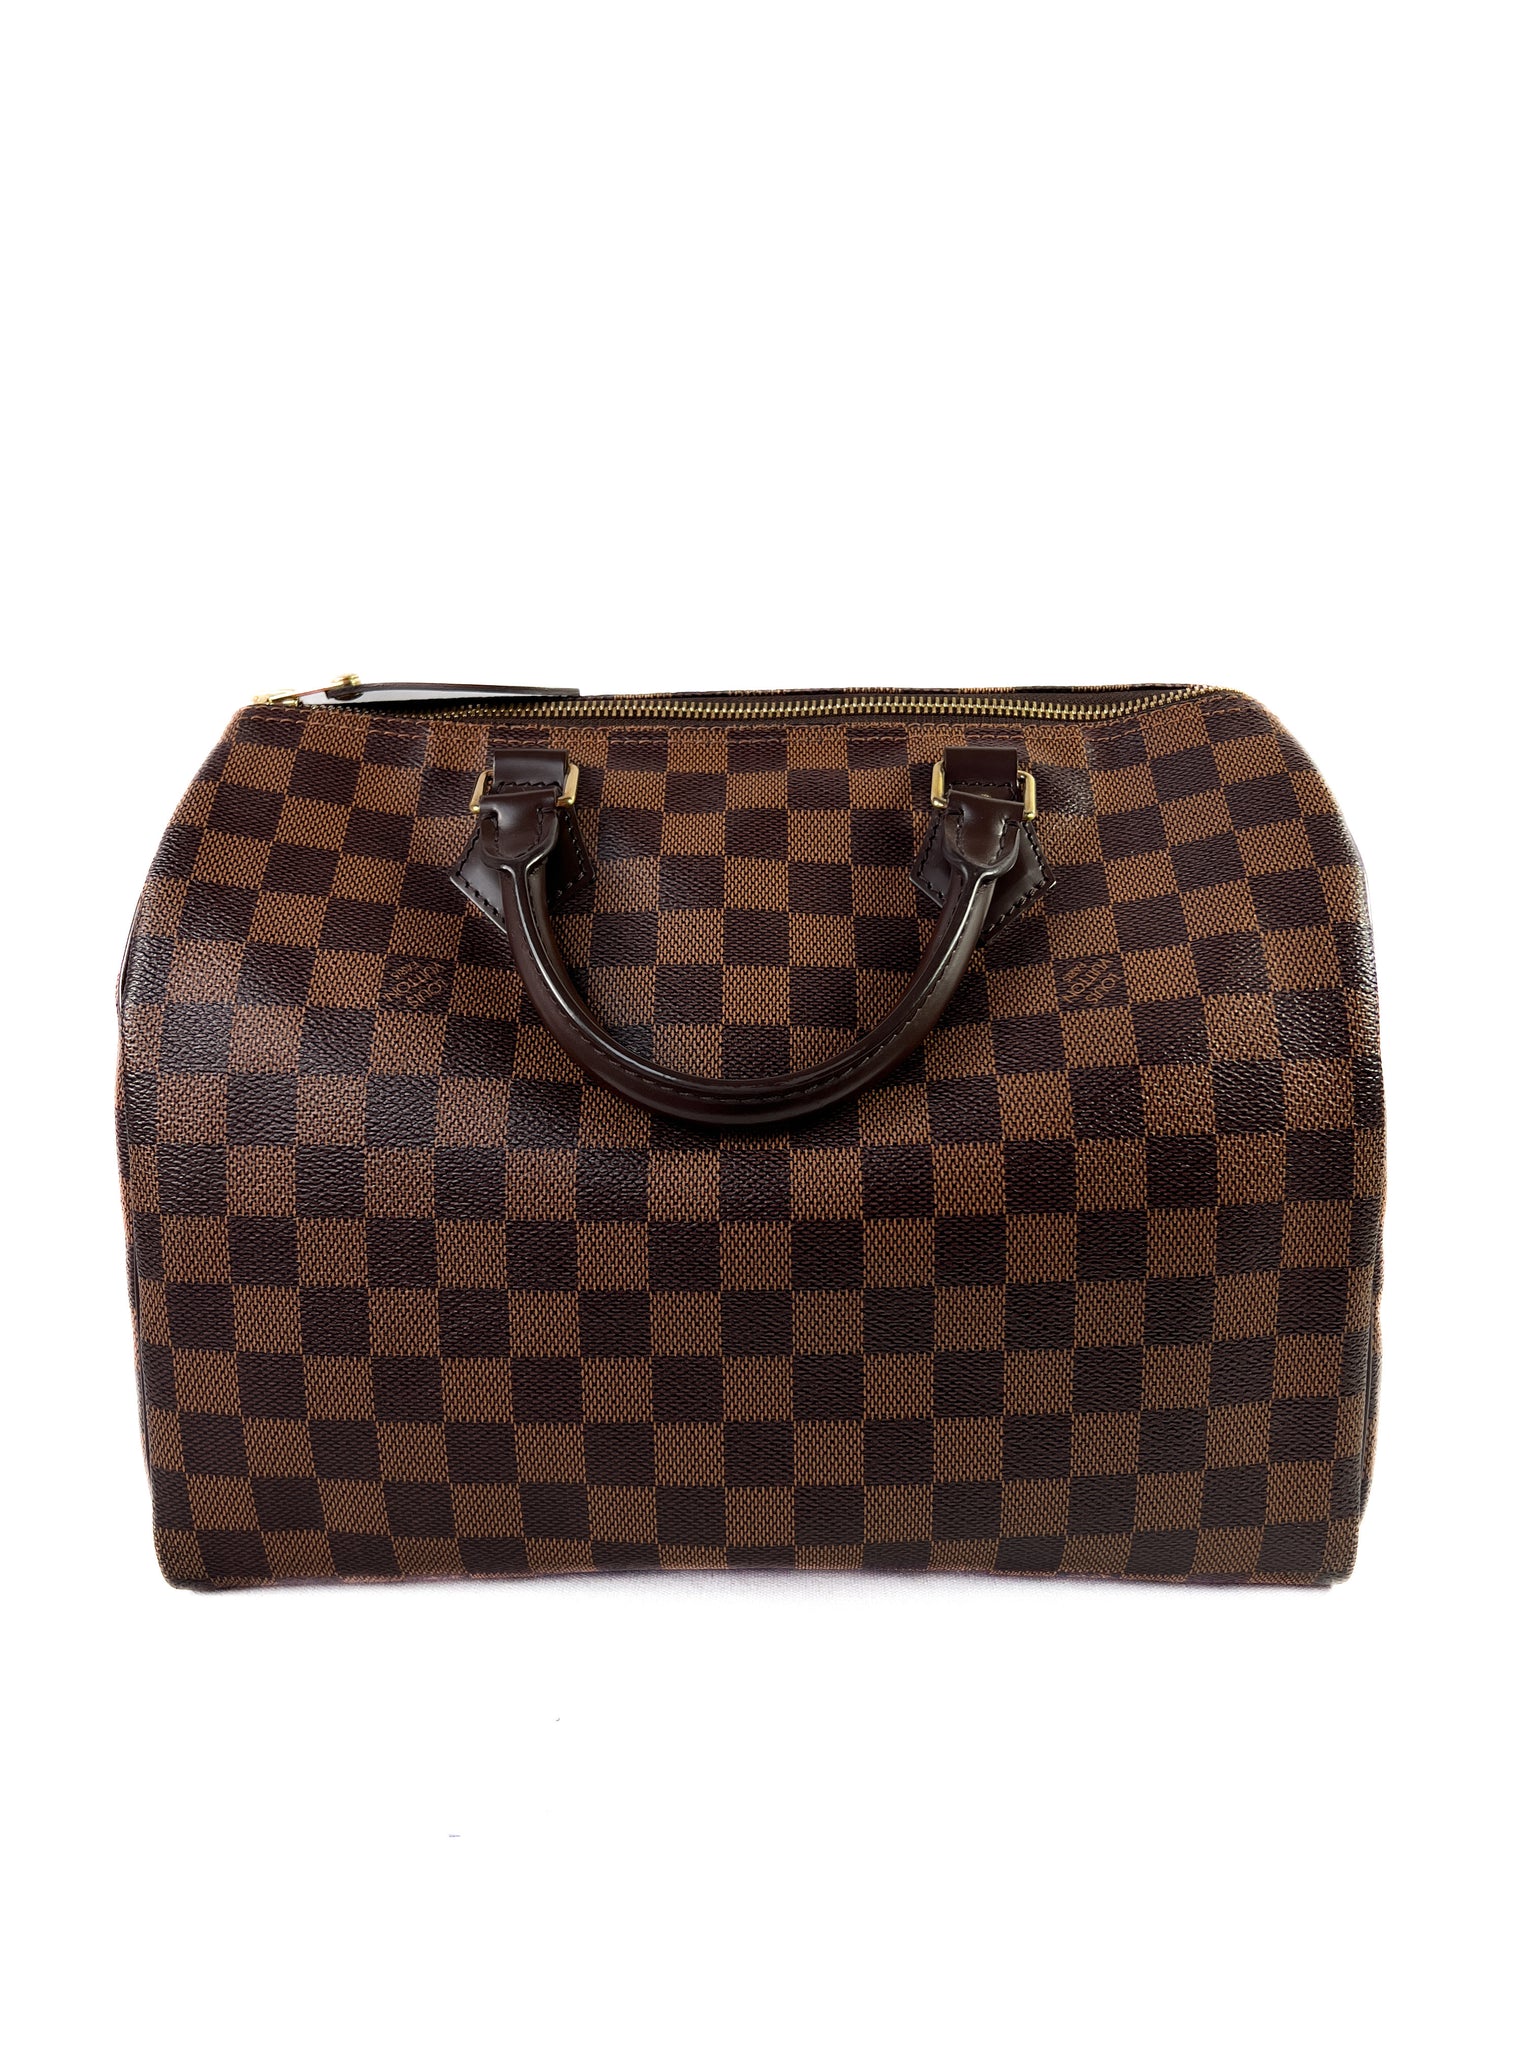 Louis Vuitton damier ebene speedy 30 2014 – My Girlfriend's Wardrobe LLC